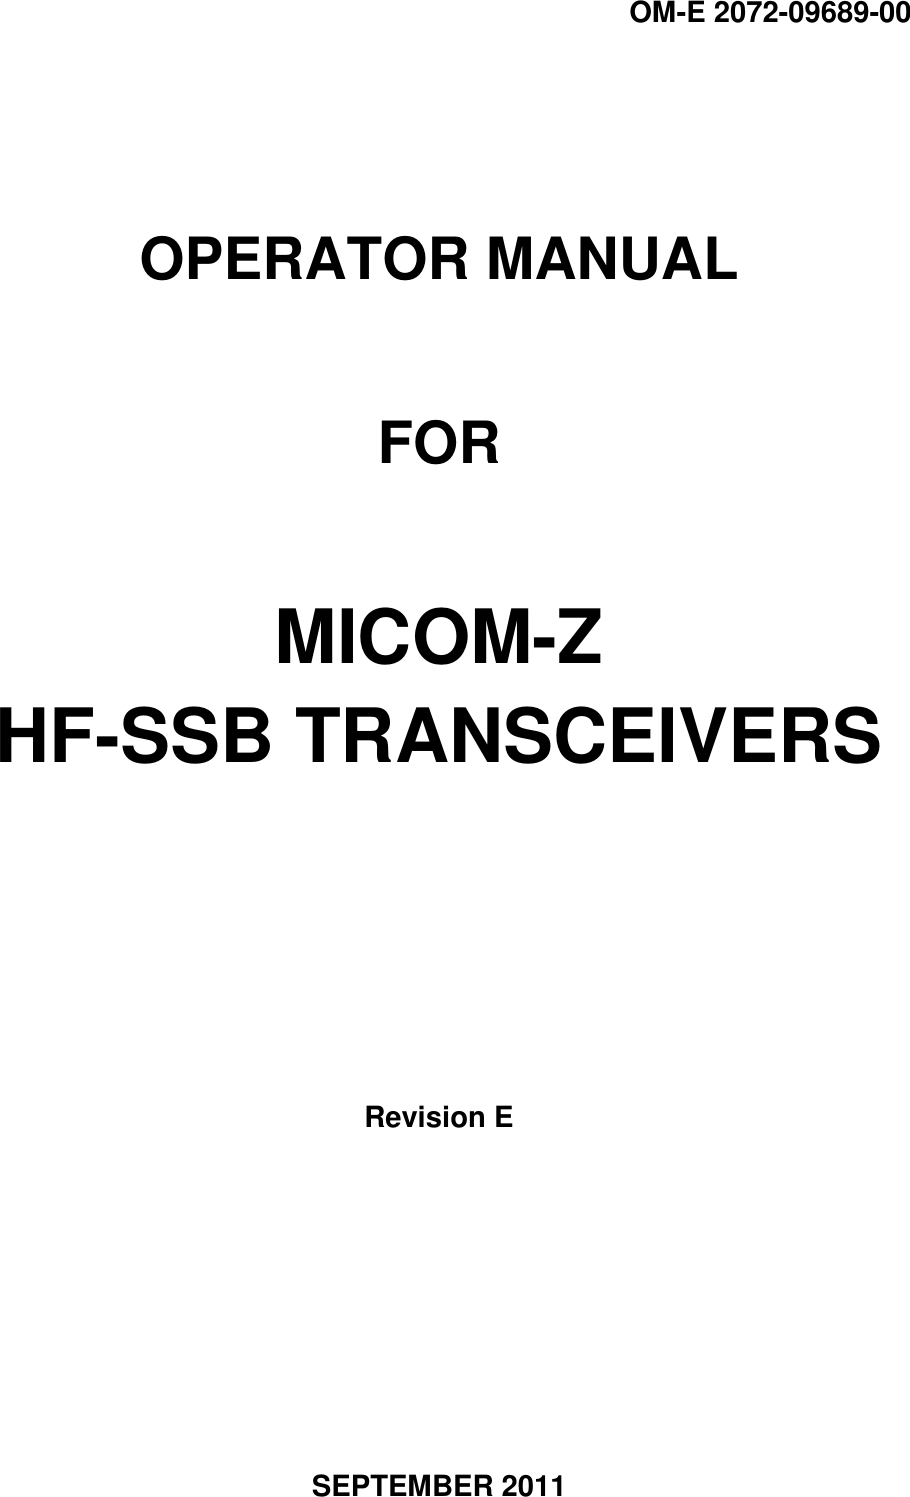 OM-E 2072-09689-00   OPERATOR MANUAL  FOR  MICOM-Z HF-SSB TRANSCEIVERS        Revision E        SEPTEMBER 2011 